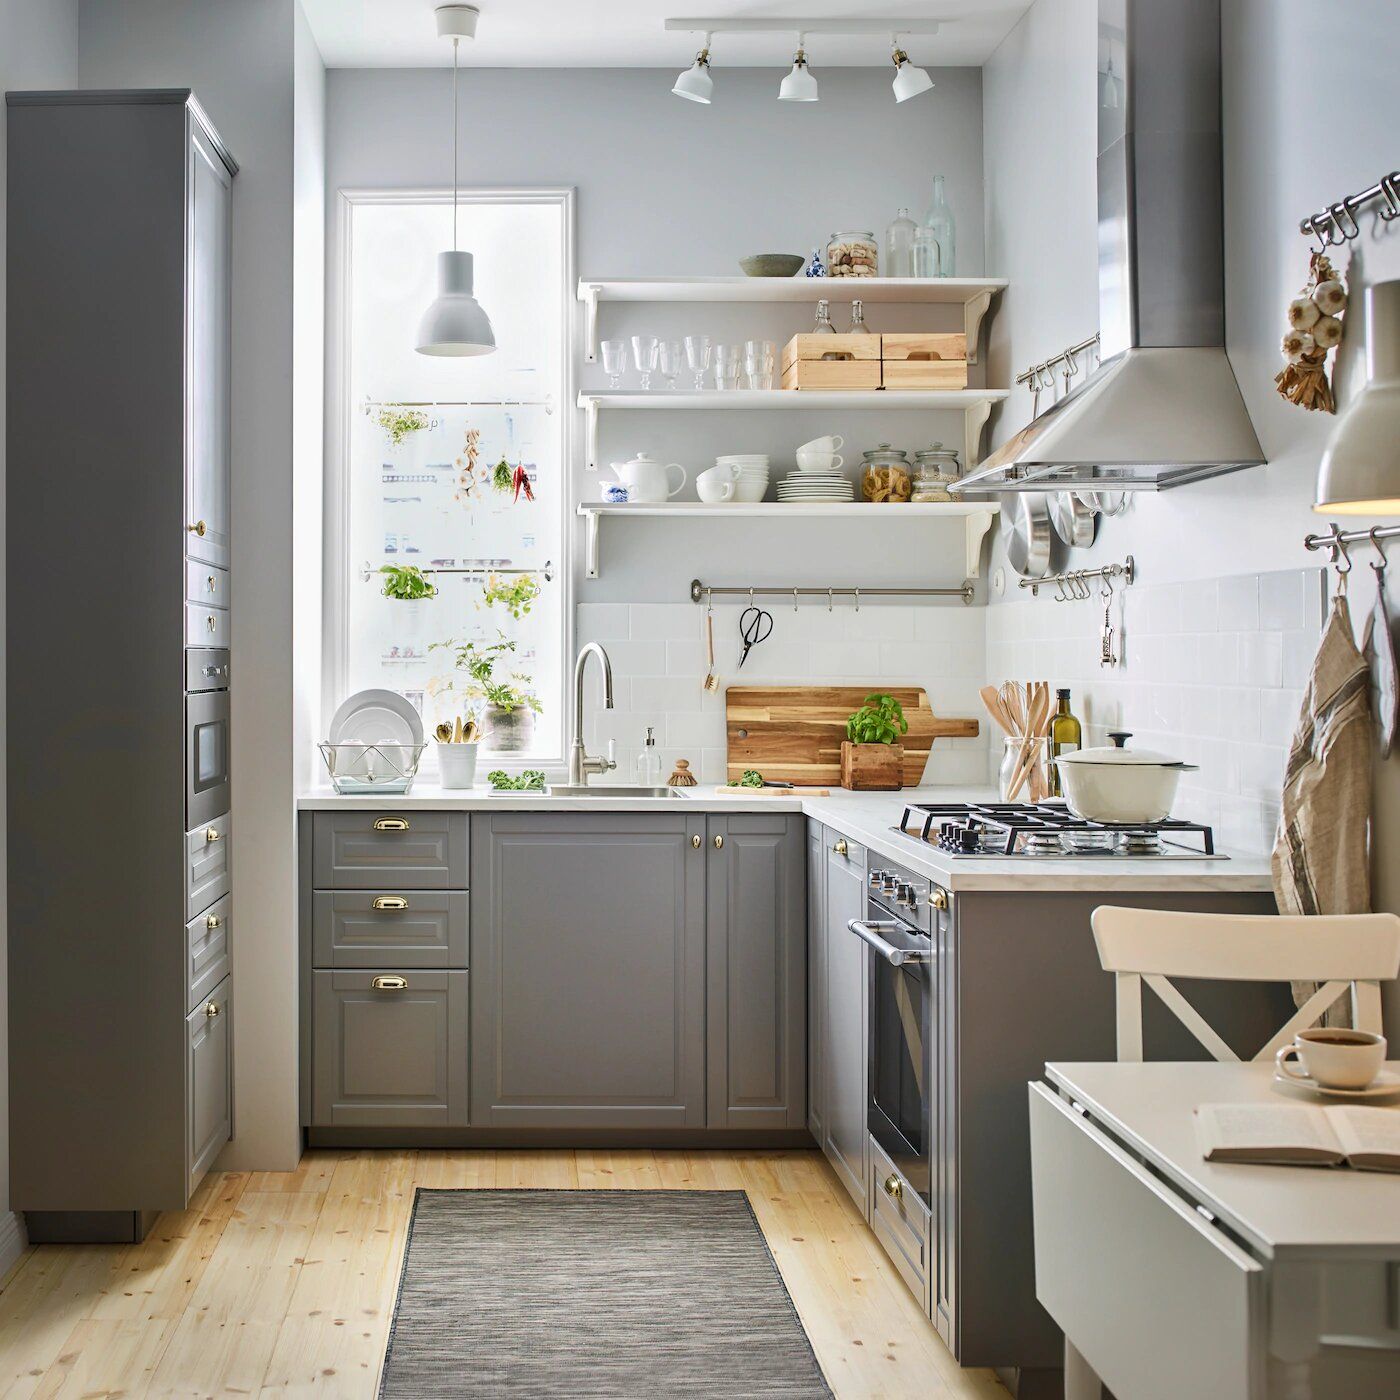 Dapur kecil tetap bisa kamu kreasikan sedemikian rupa agar menjadi dapur yang cantik dan elegan.